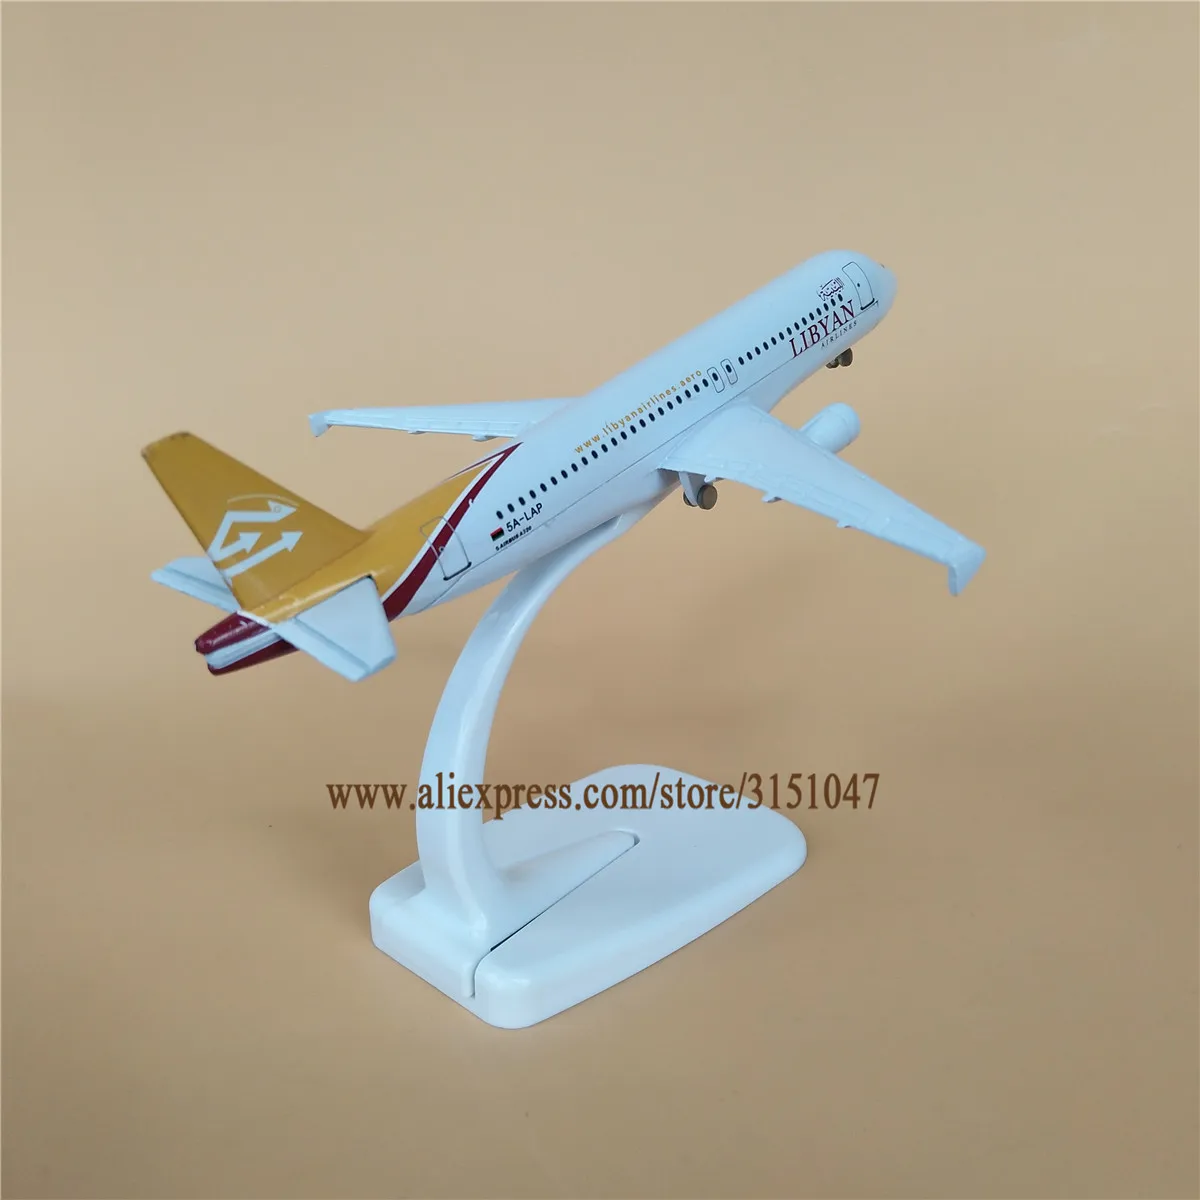 NUEVA Aleación de Metal Aérea de LIBIA Airlines, Avión Modelo Airbus 320 A320 Airways Modelo de Avión Stand de la Aeronave a los Niños los Regalos de 16cm 2